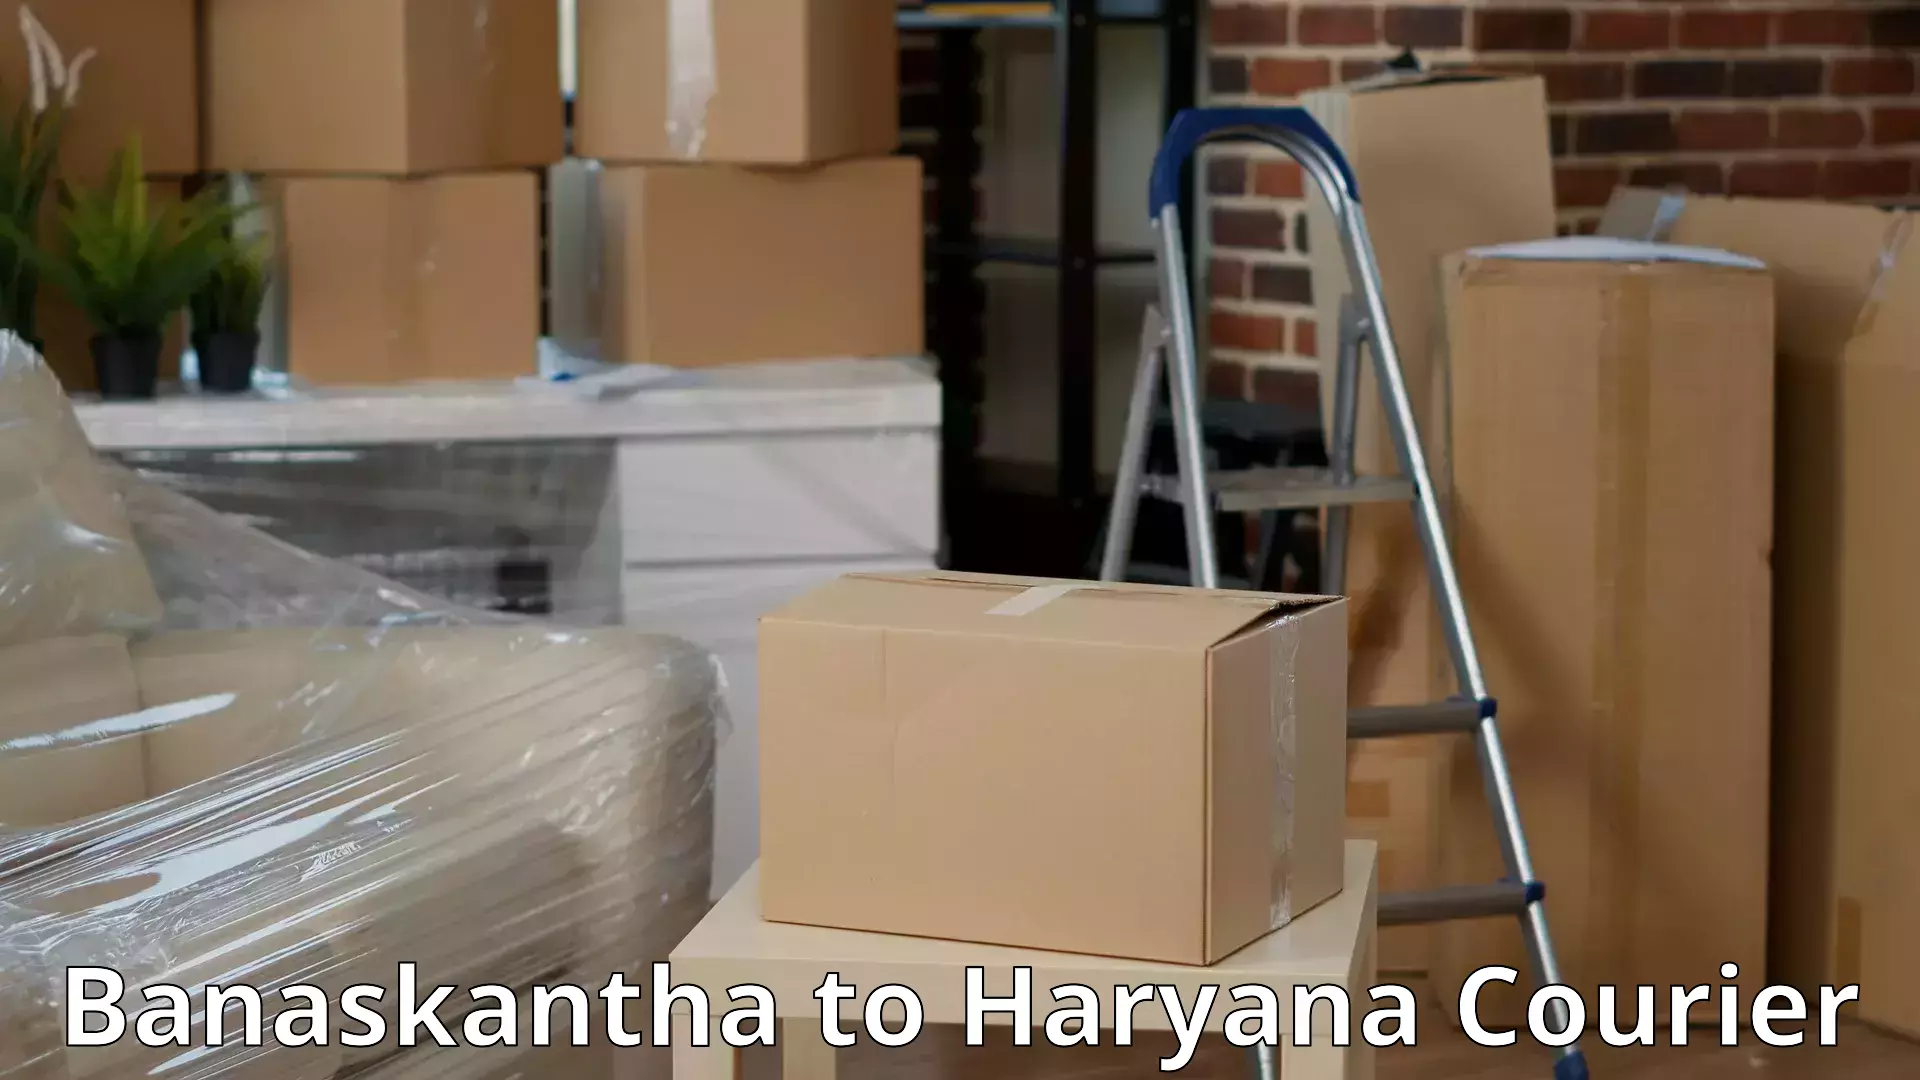 Full-service movers Banaskantha to Barwala